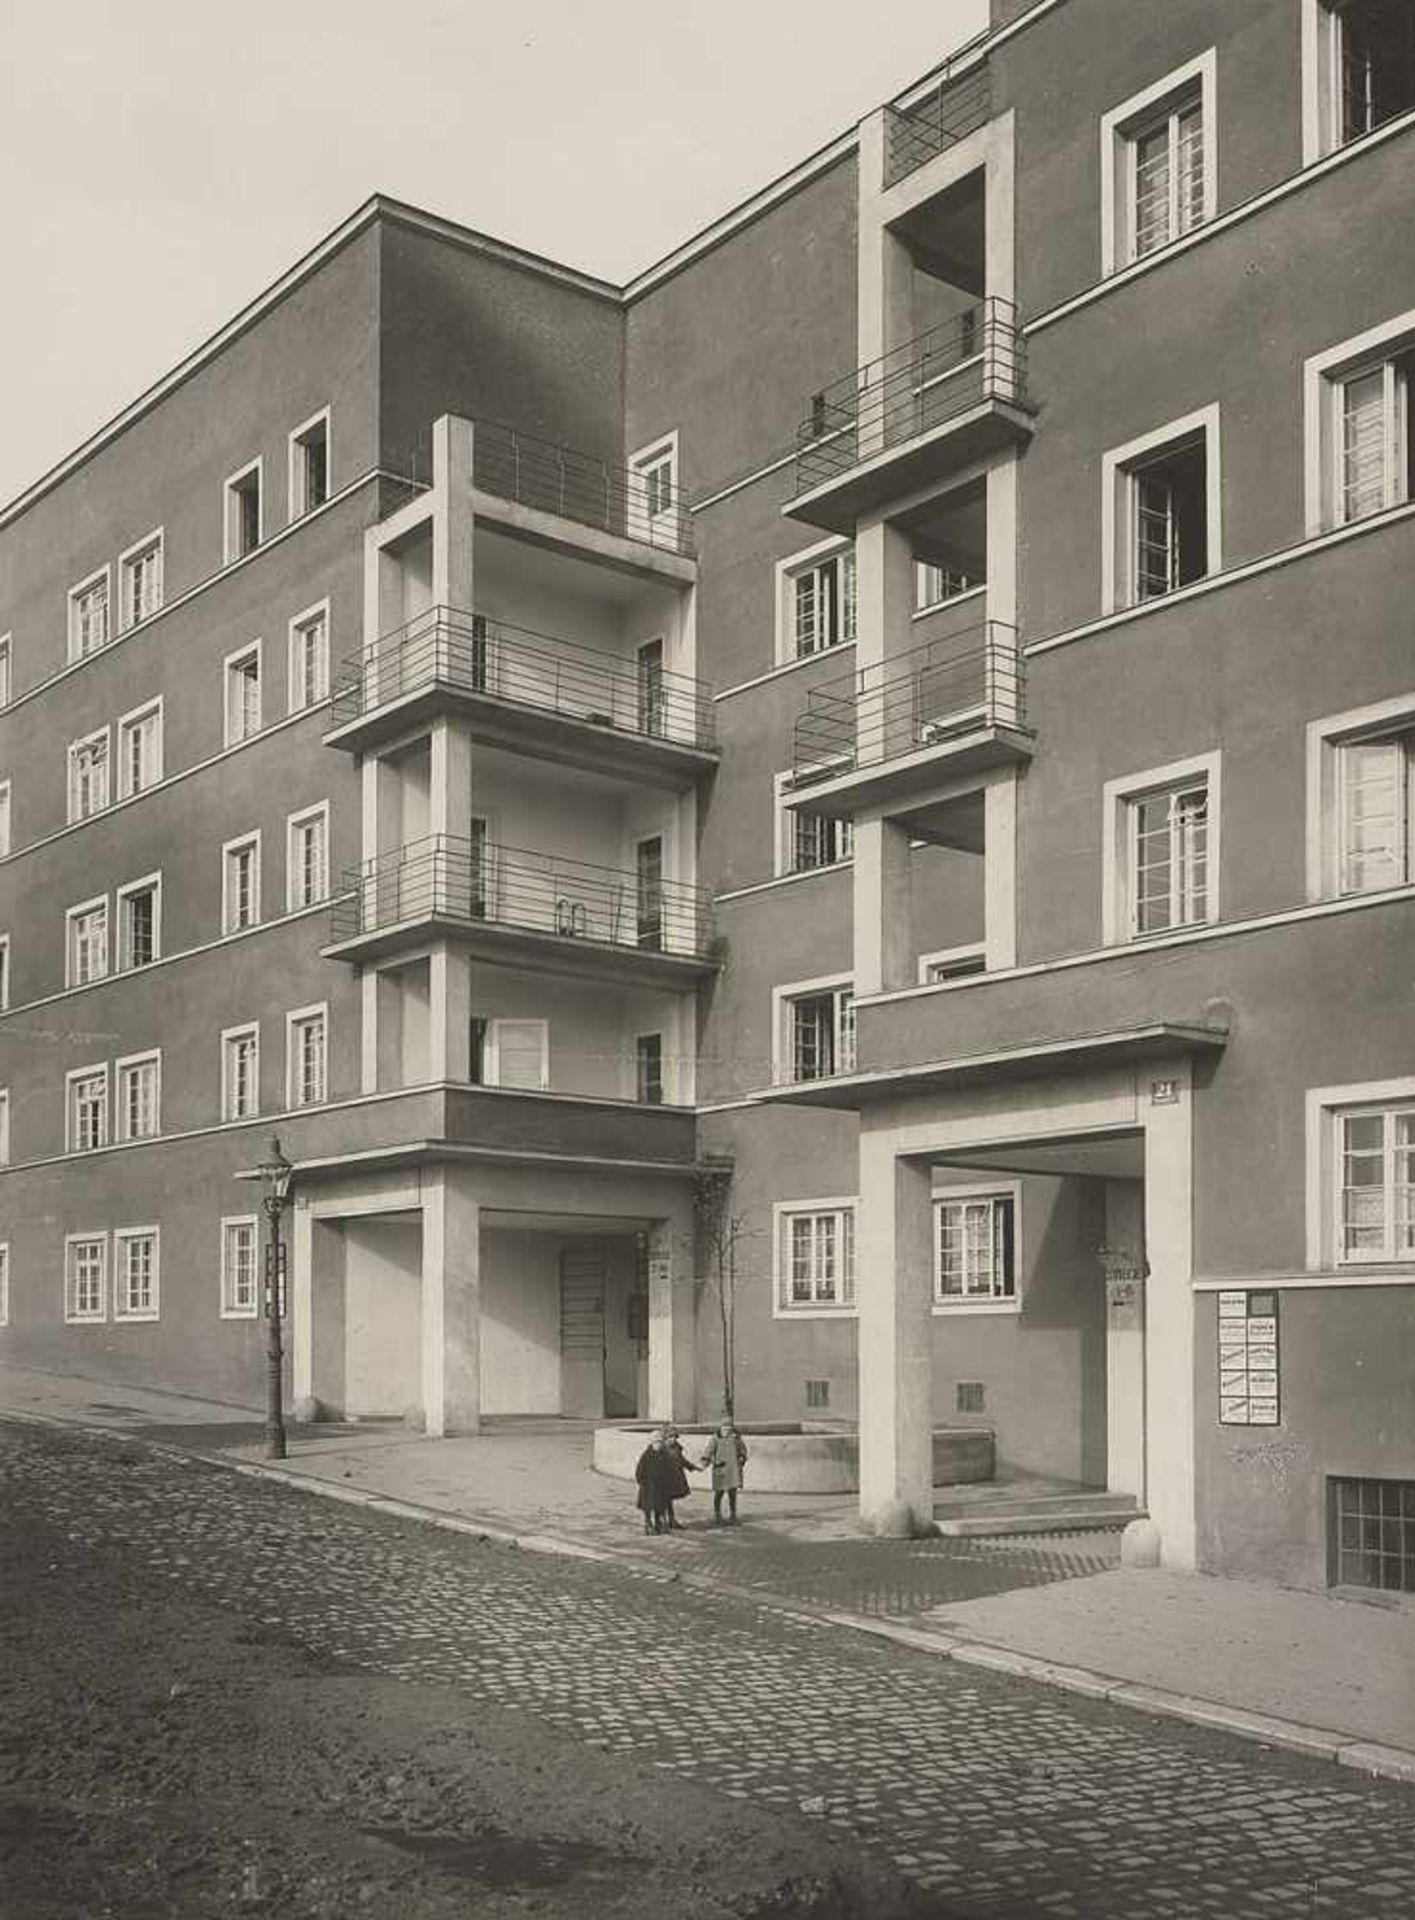 Gerlach, Martin: Vienna: Wiederhofer Hof, Kongressplatz, architect Dr. Frank.Vienna: Wiederhofer